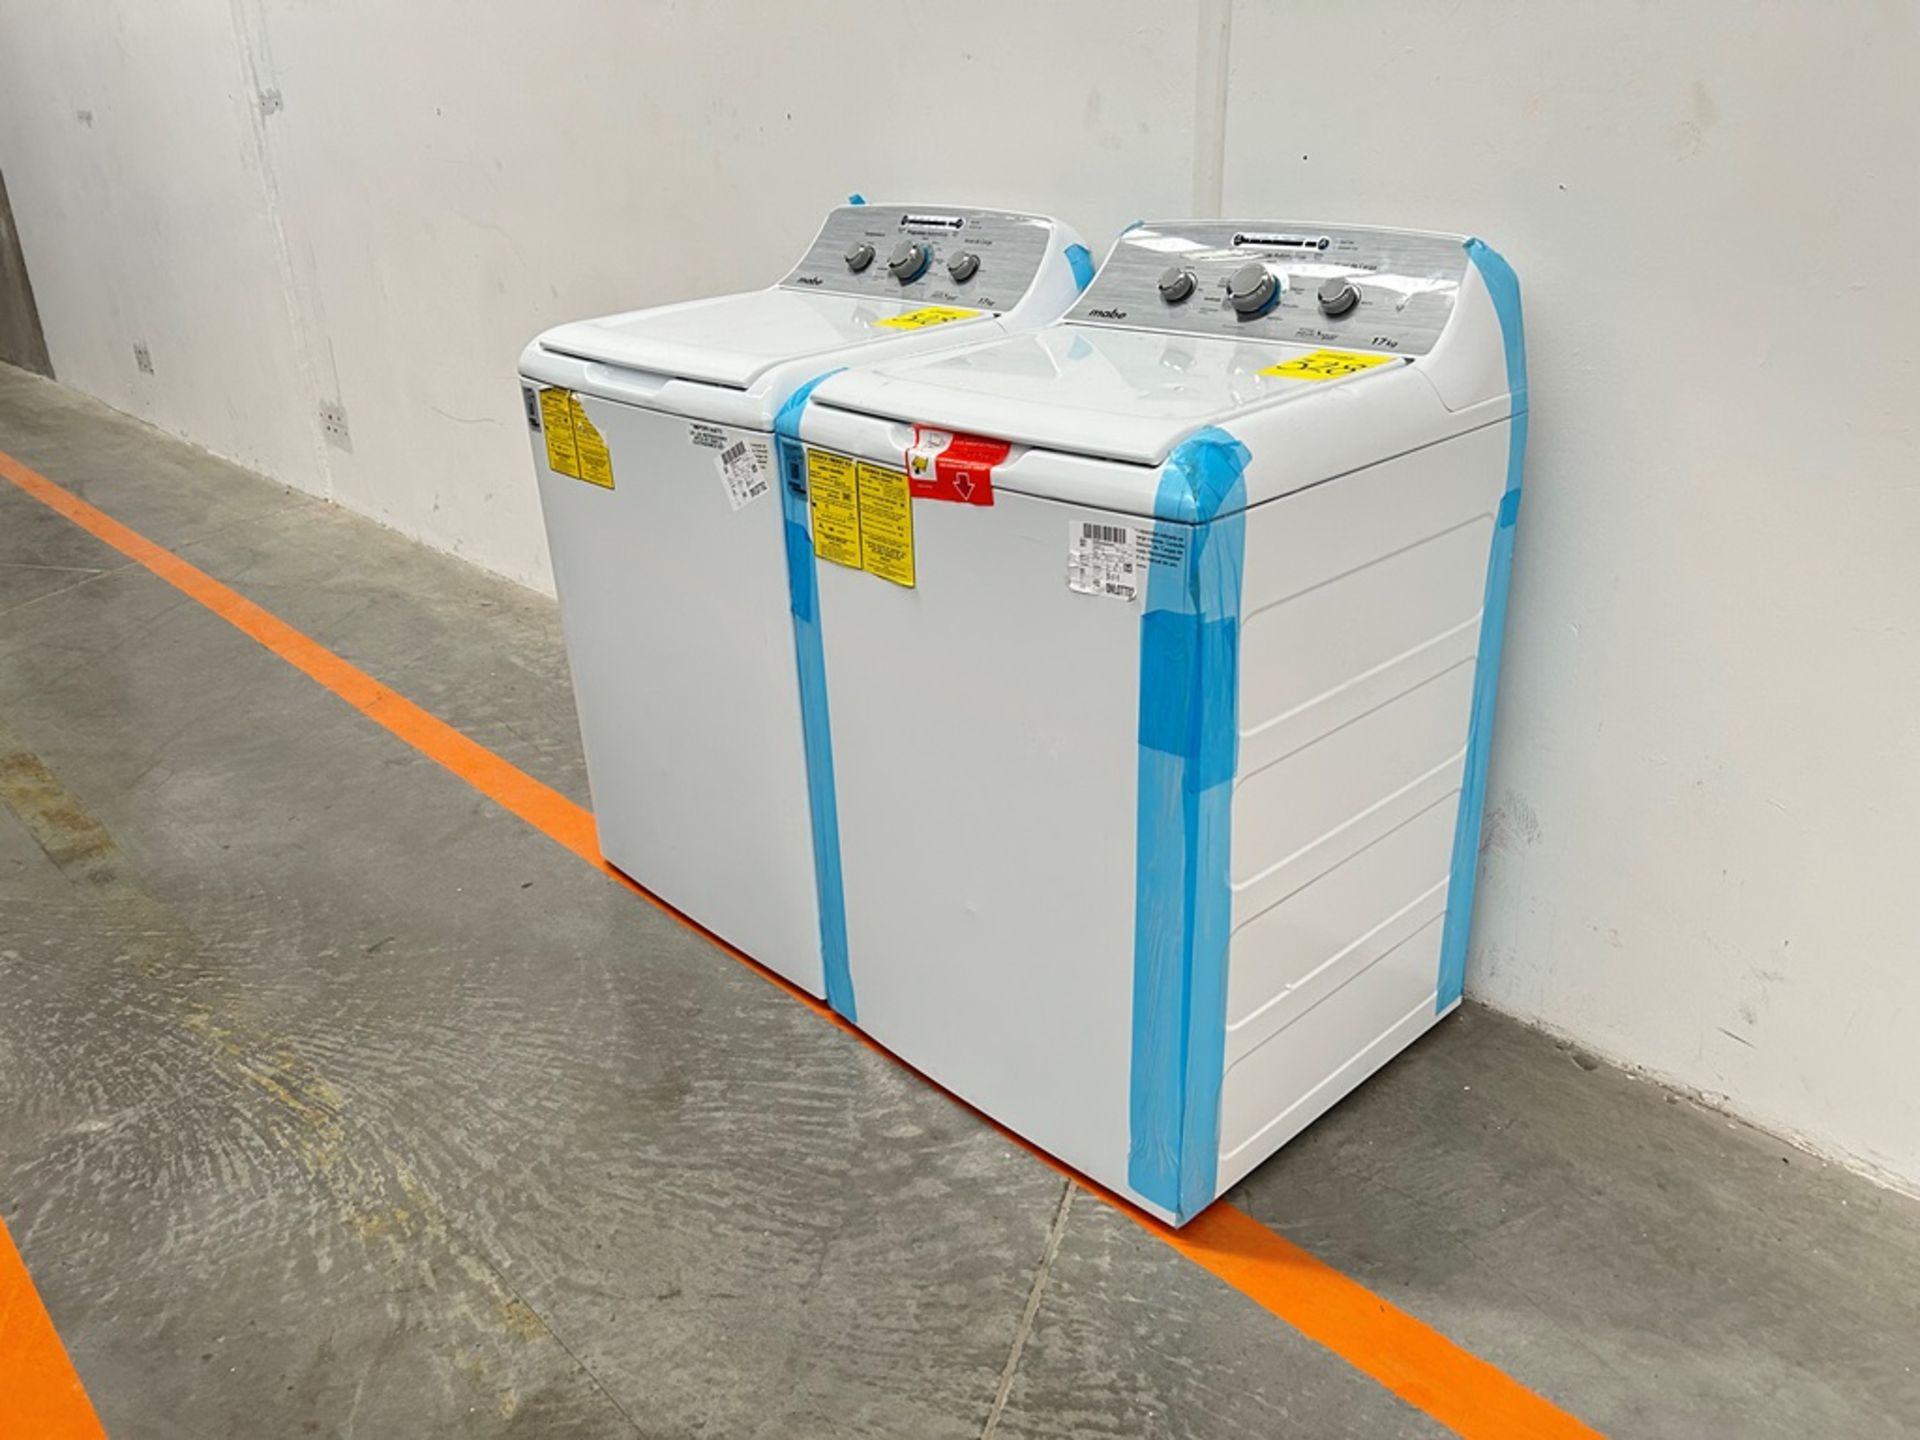 Lote de 2 lavadoras contiene: 1 Lavadora de 17 KG Marca MABE, Modelo LMA77113CBAB04, Serie S91208, - Image 3 of 10